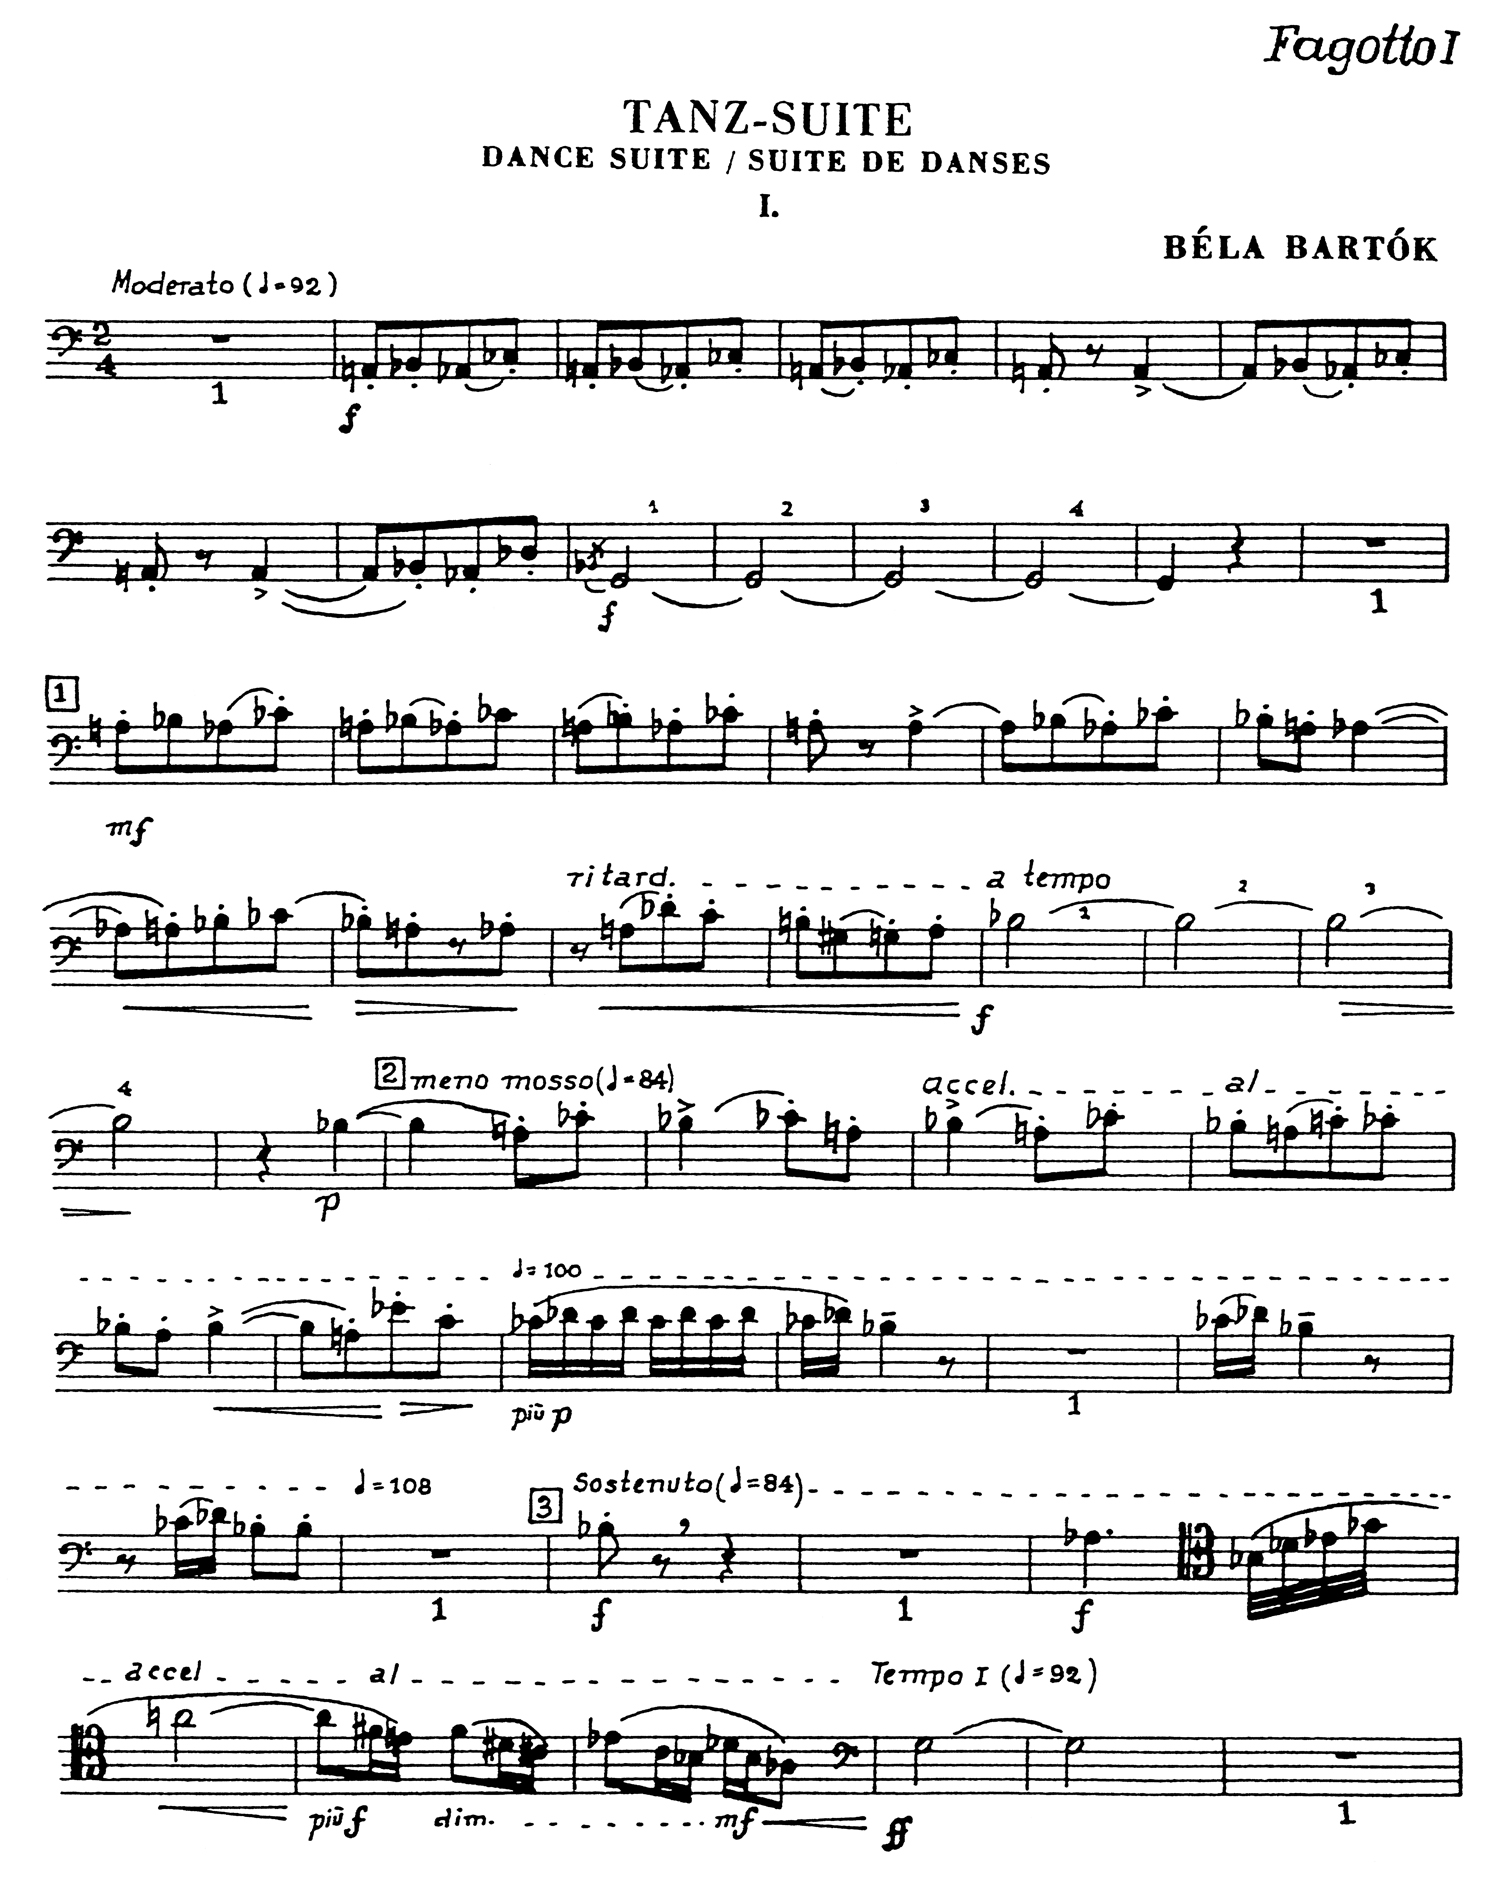 Bartok Dance Suite Part 1.jpg